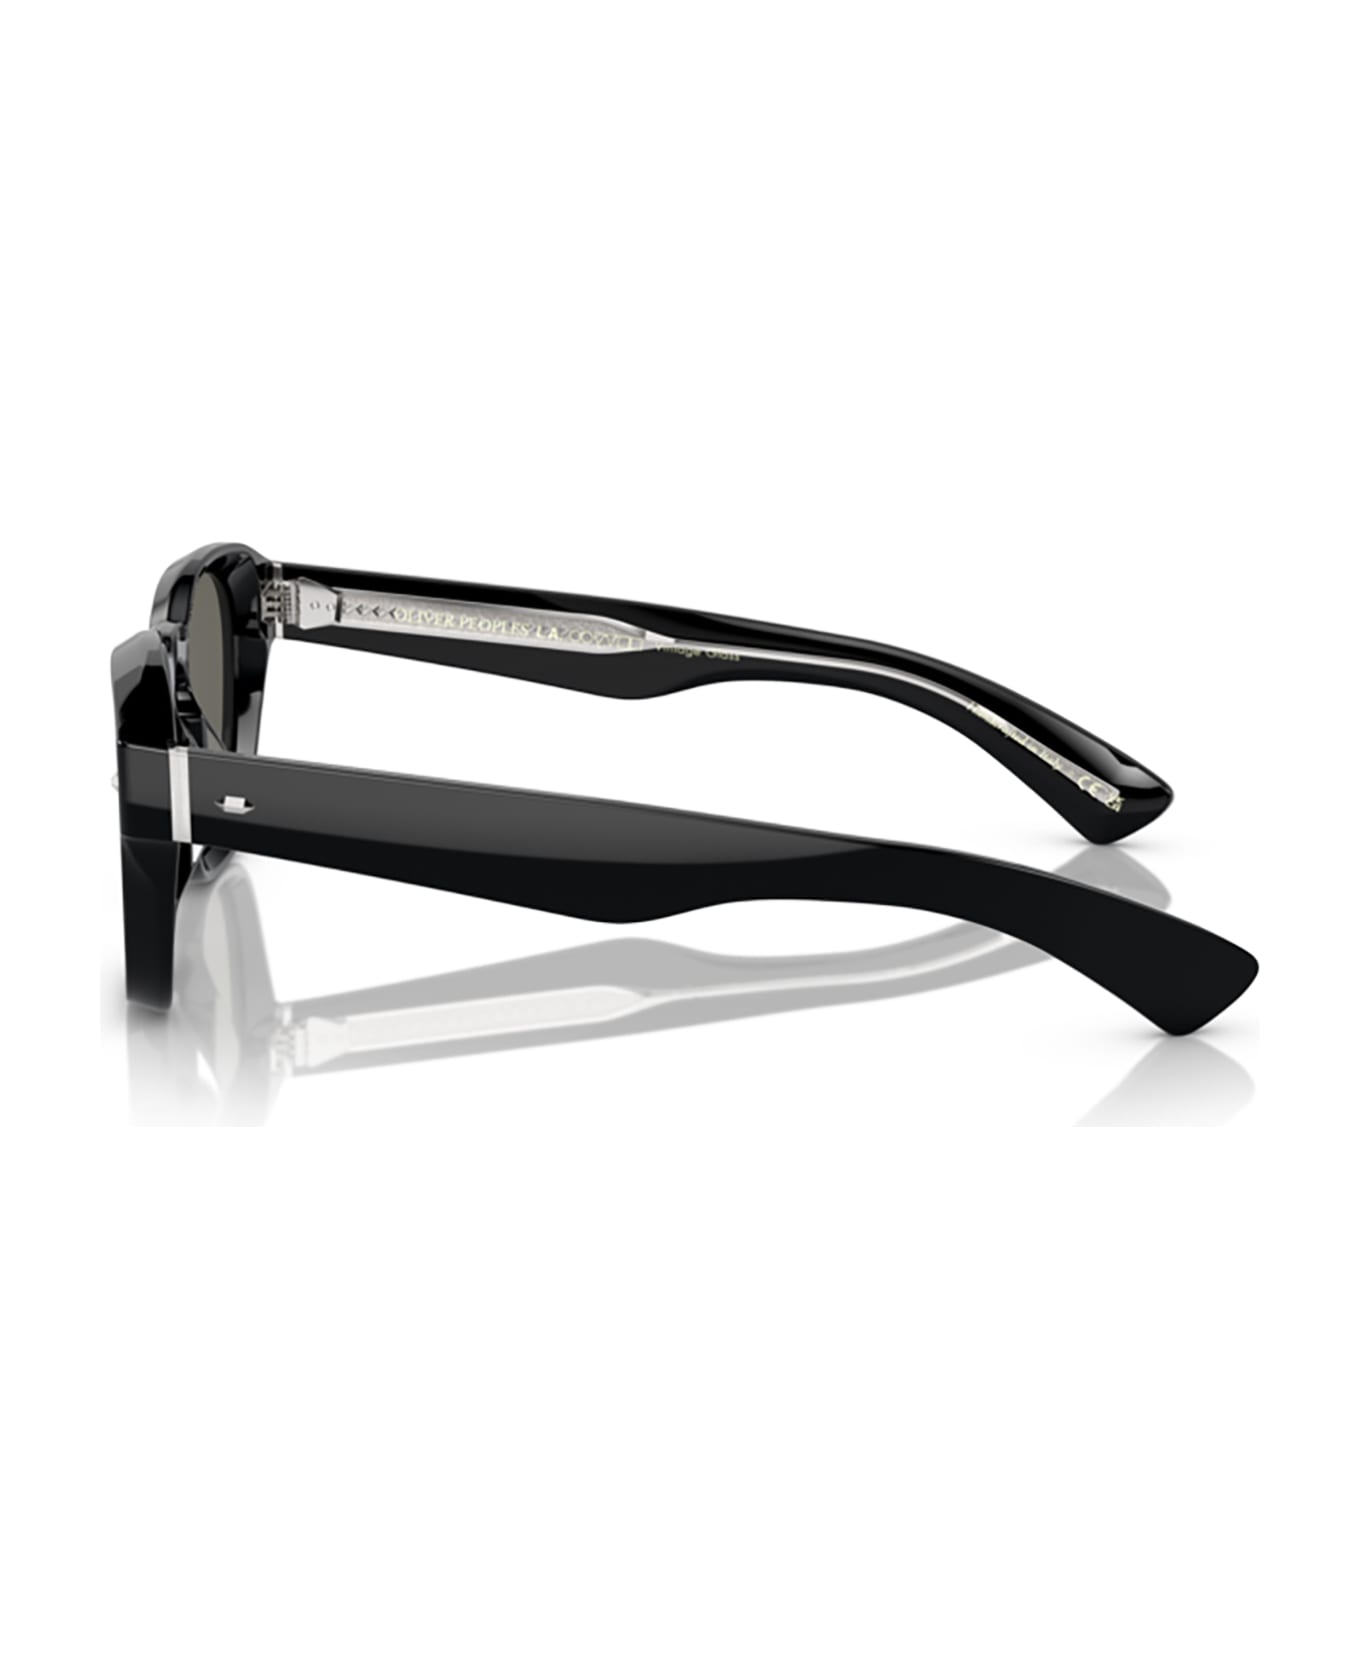 Oliver Peoples Ov5521su Black Sunglasses - Black サングラス